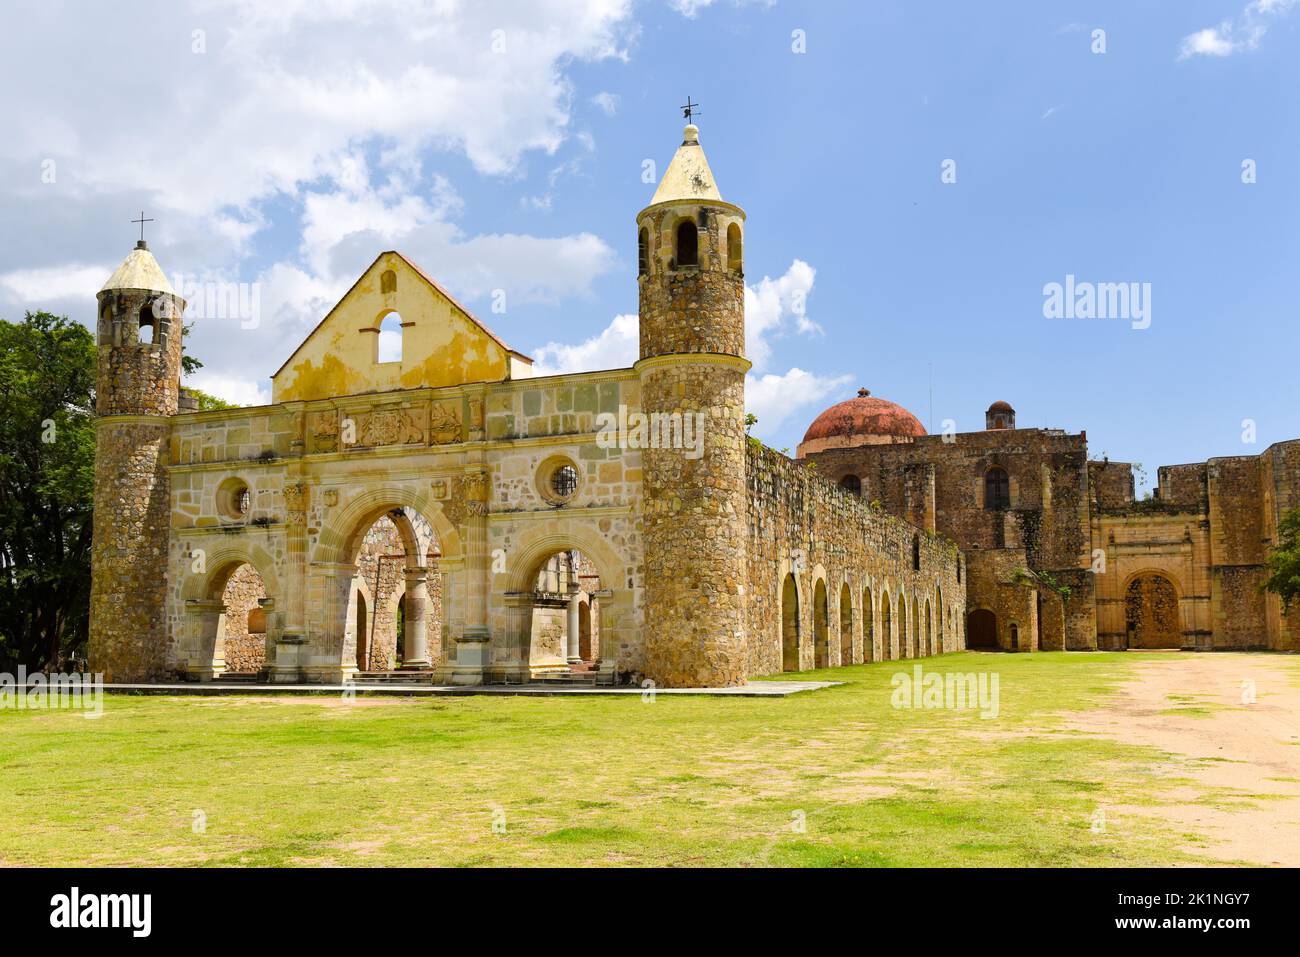 The ex monastery of Santiago Apóstol, Cuilapan de Guerrero, Oaxaca state, Mexico Stock Photo